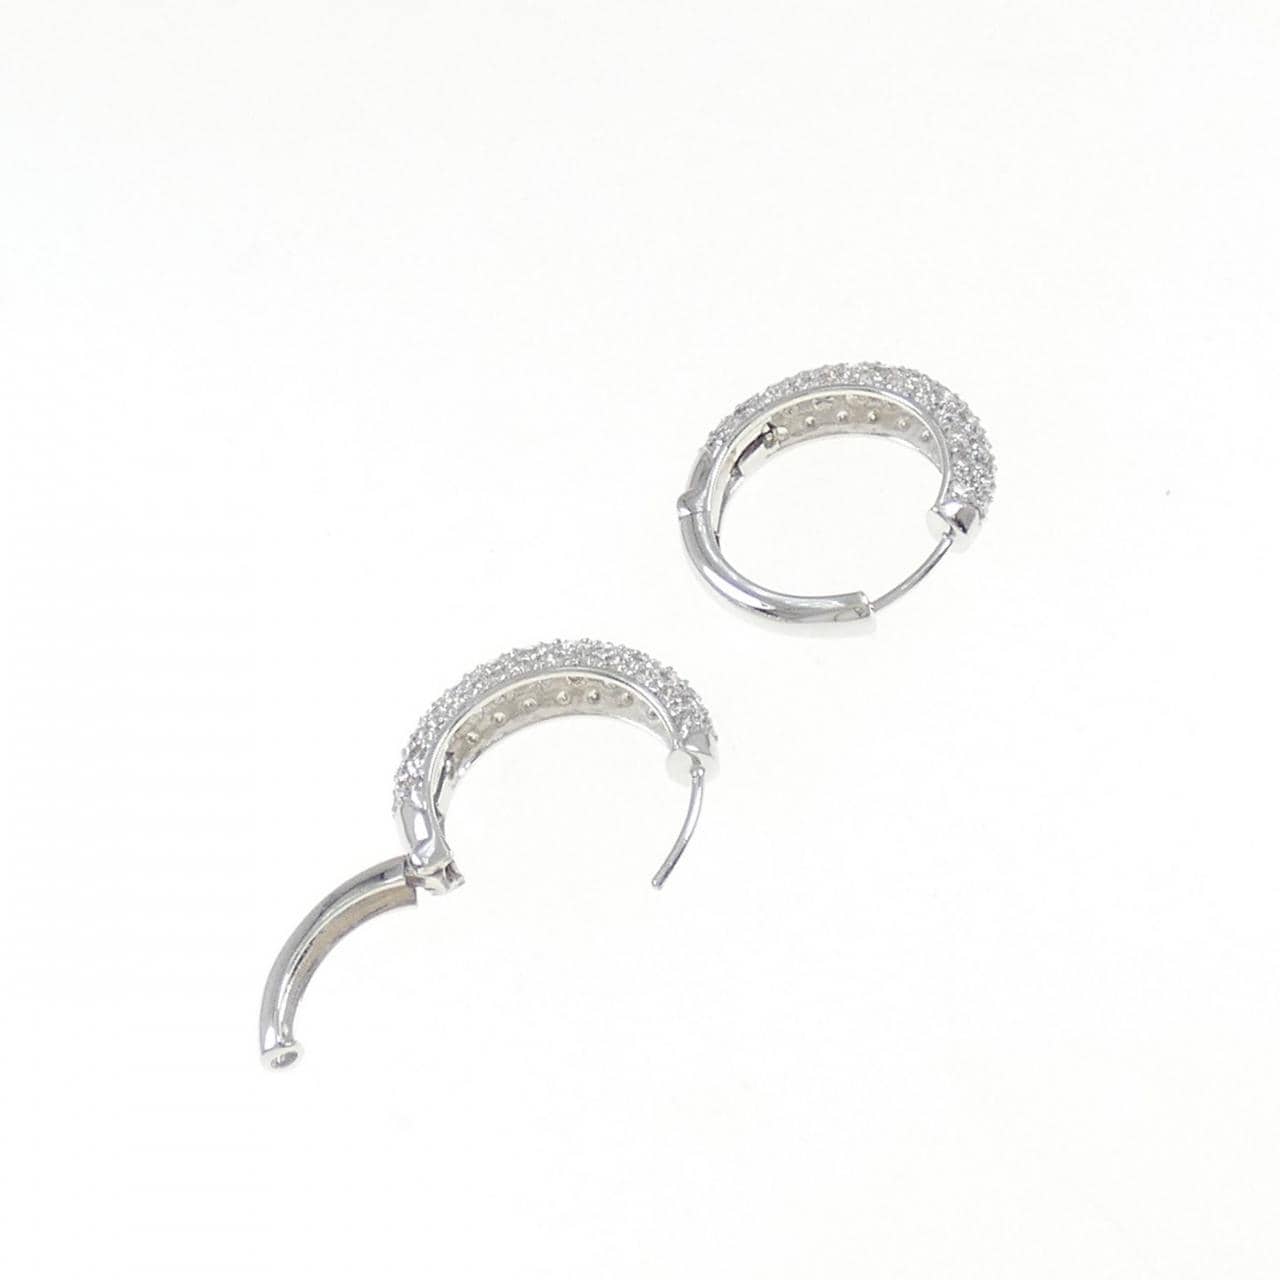 K18WG pave Diamond earrings 2.12CT